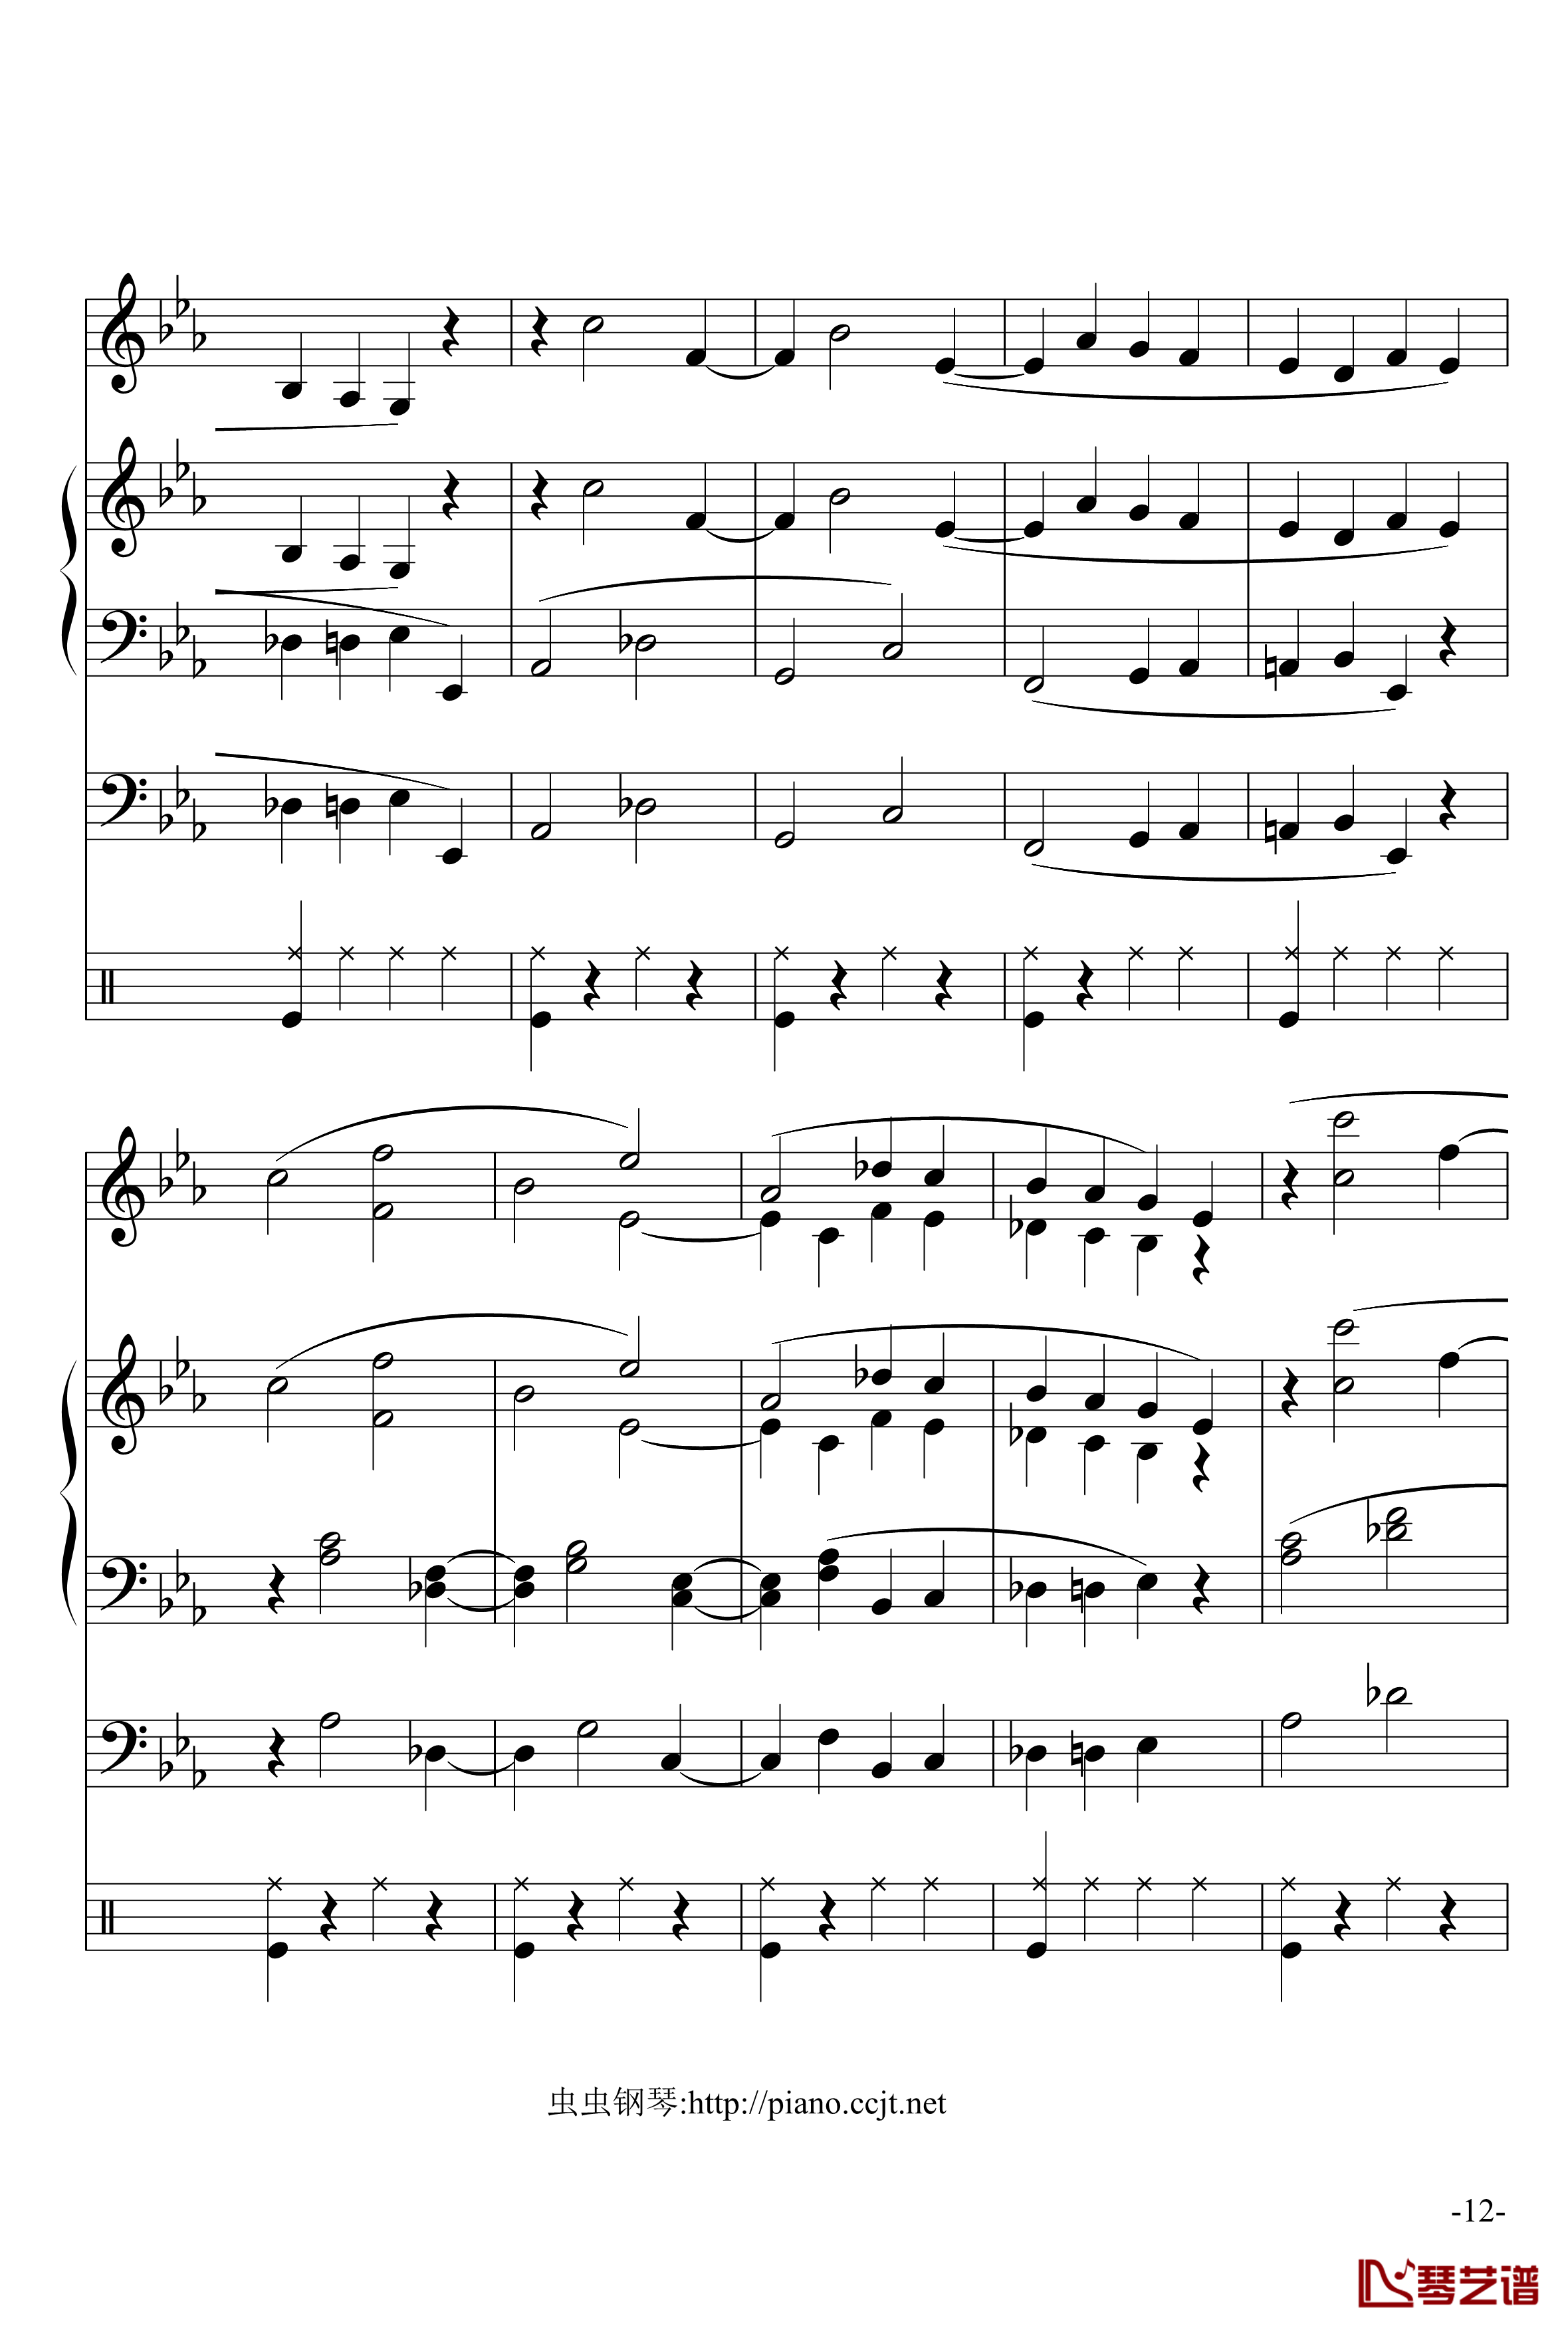 悲怆奏鸣曲钢琴谱-加小乐队-贝多芬-beethoven12